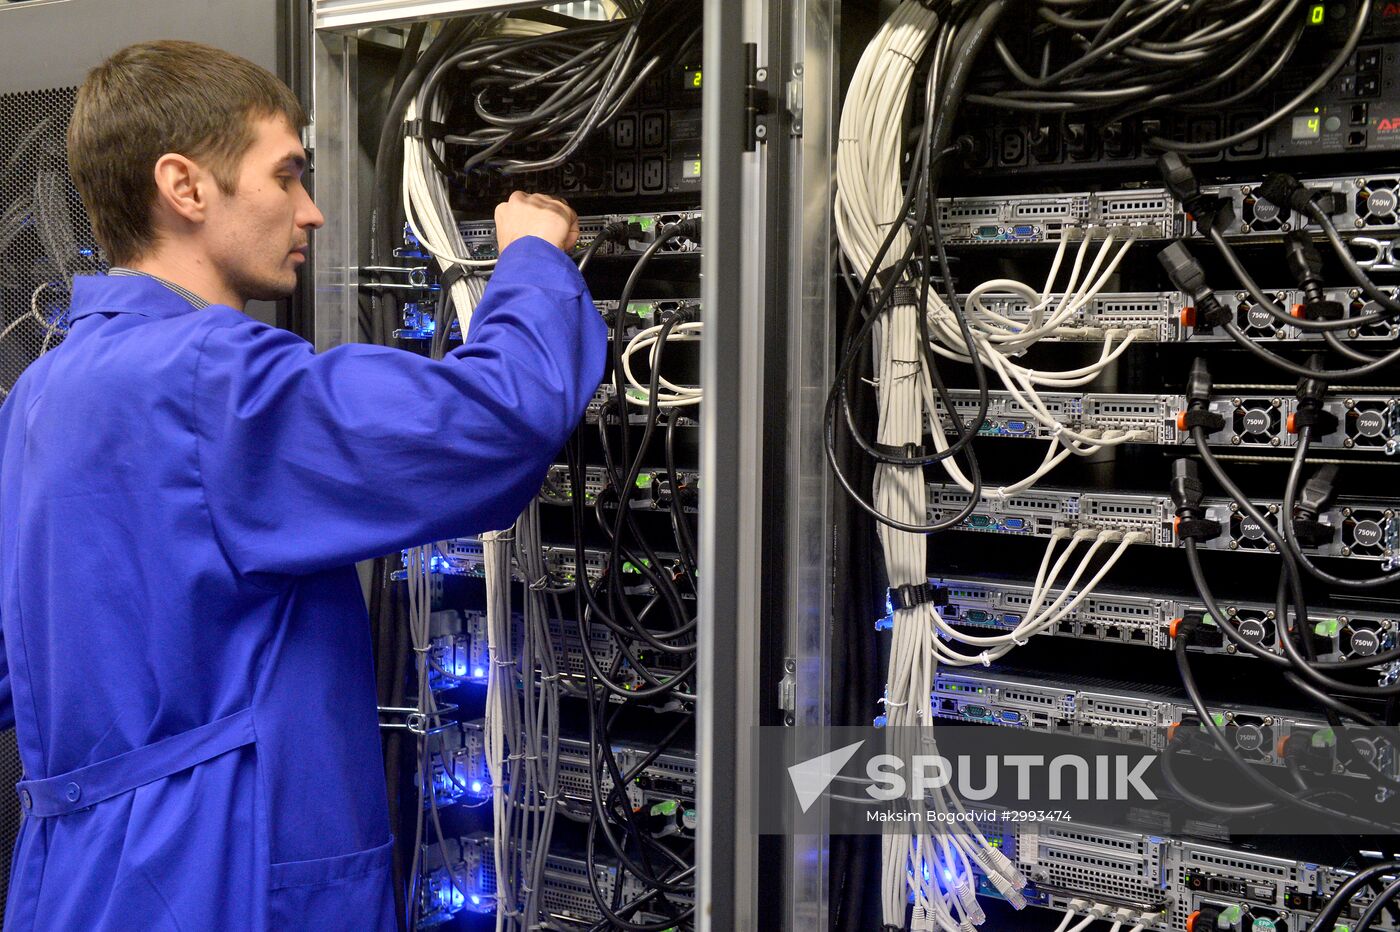 IT park's data center in Kazan